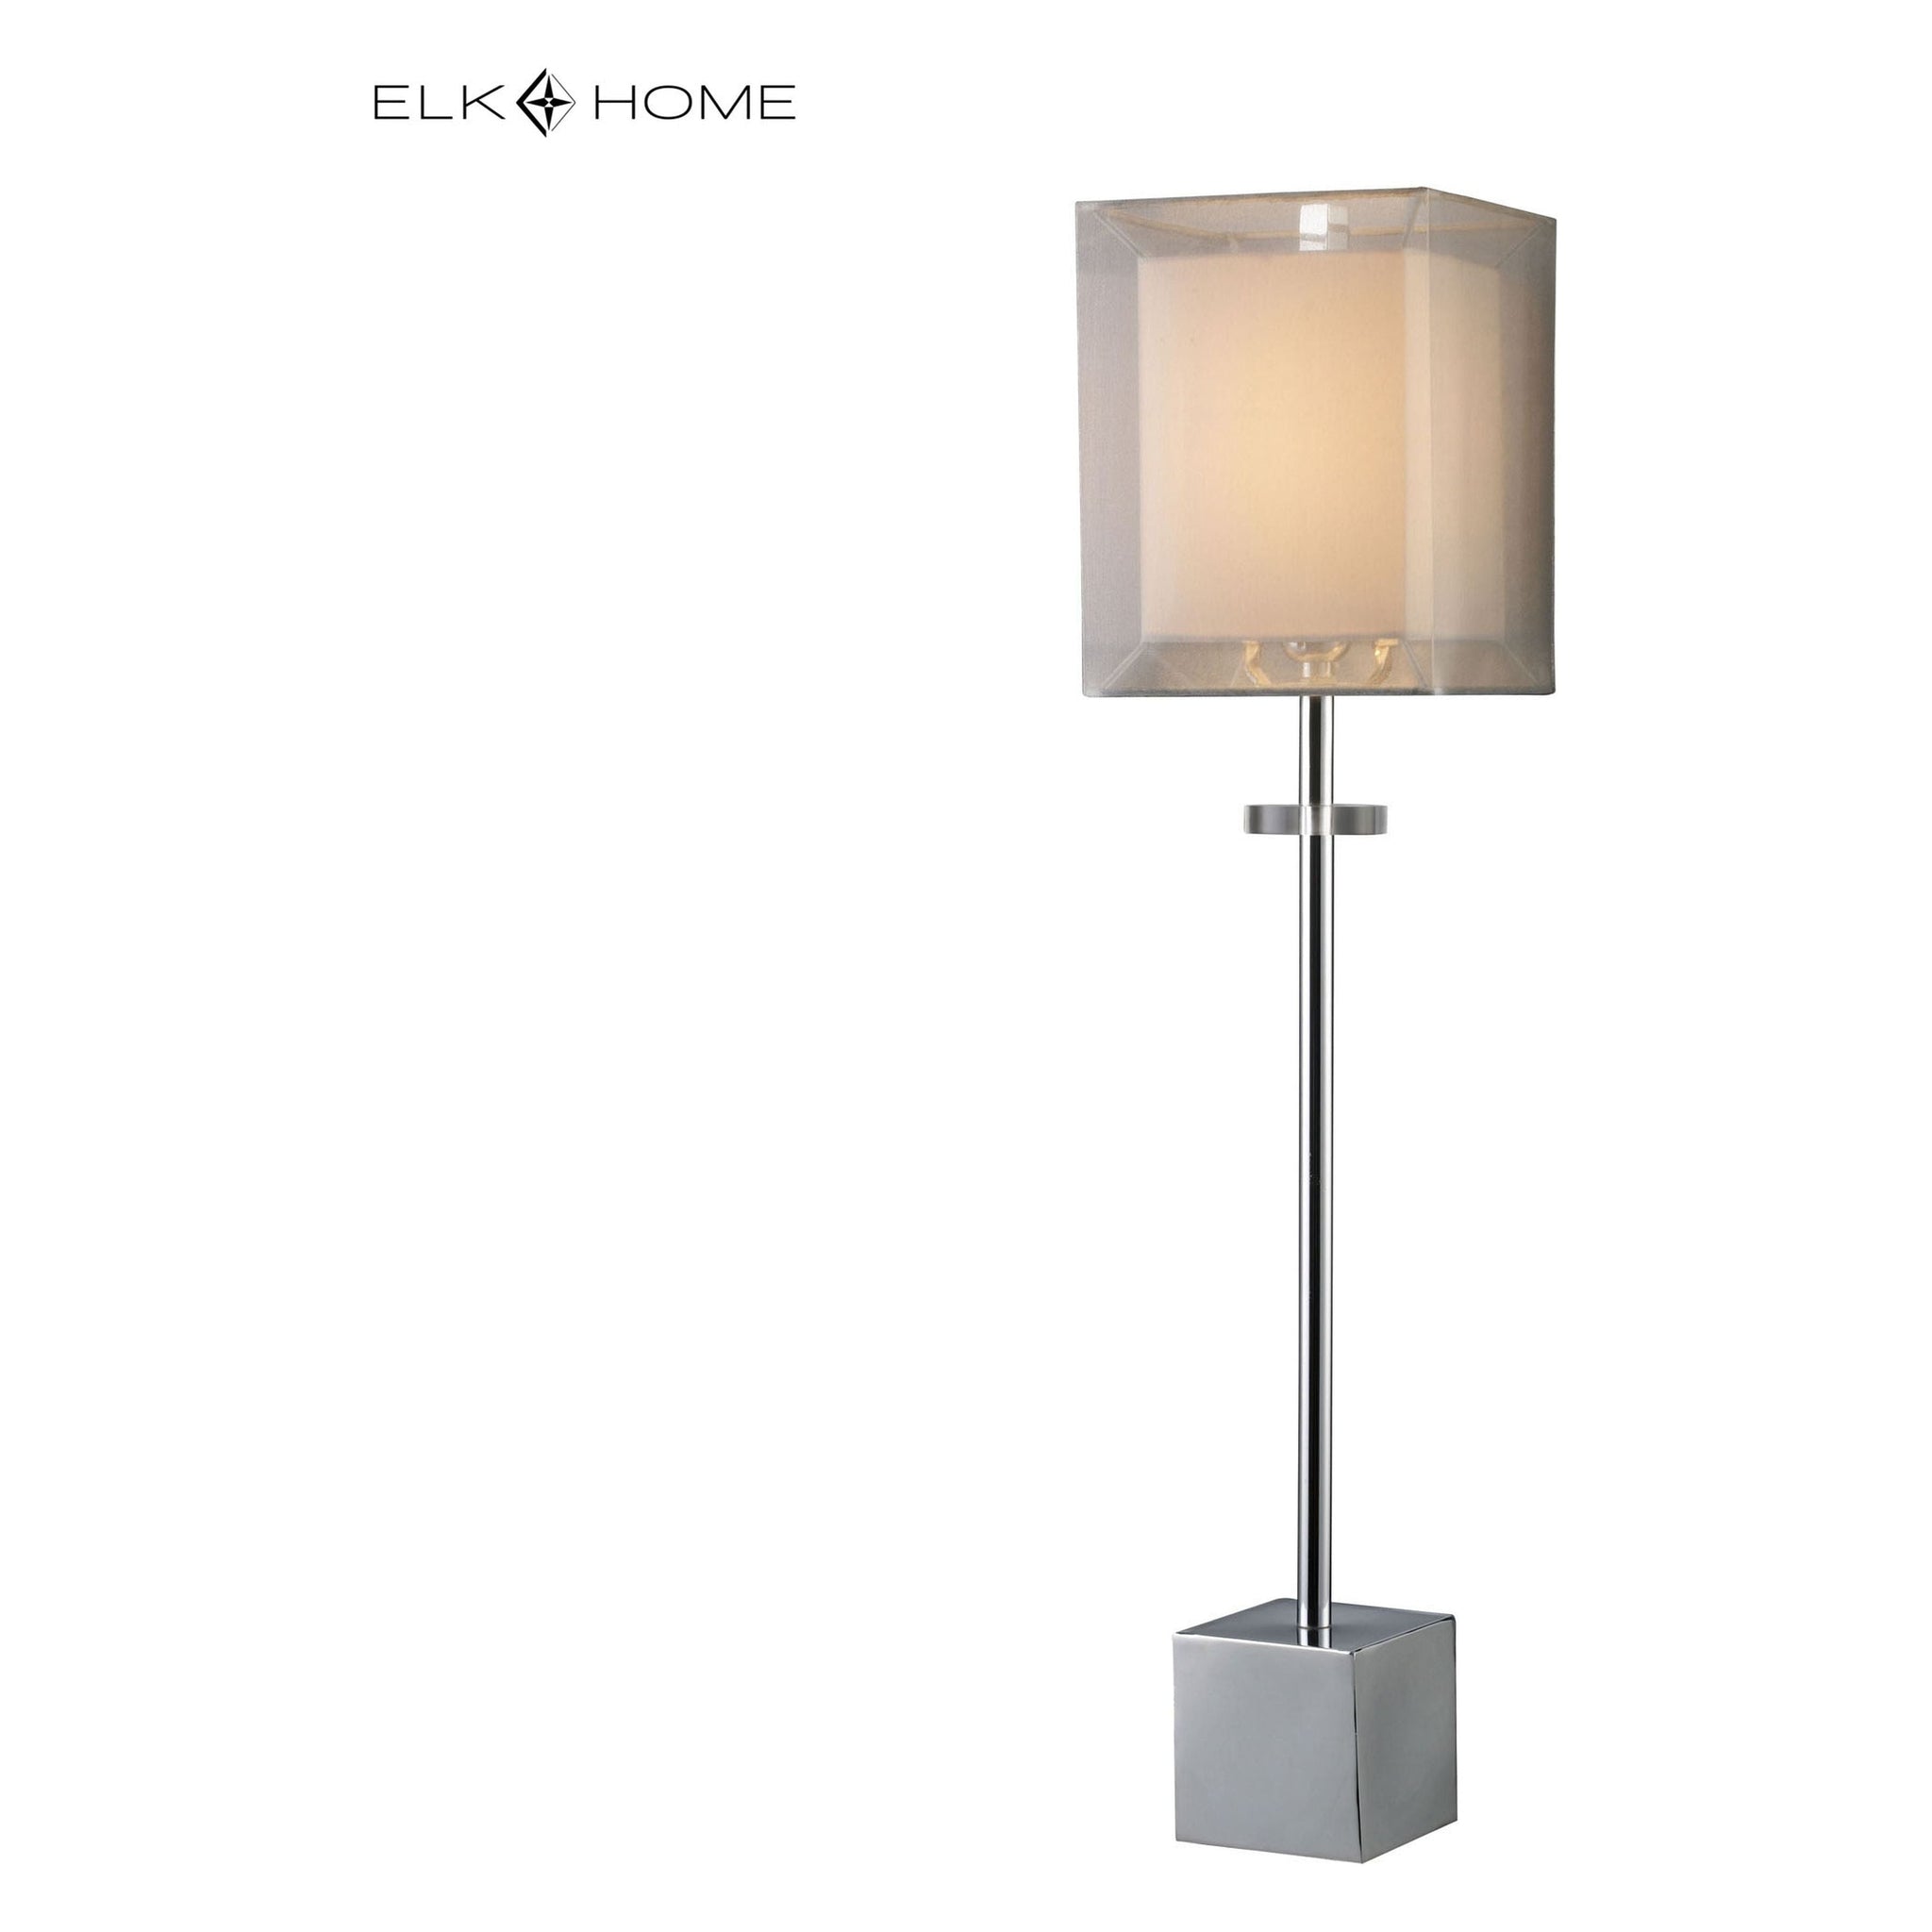 Exeter 30" High 1-Light Buffet Lamp